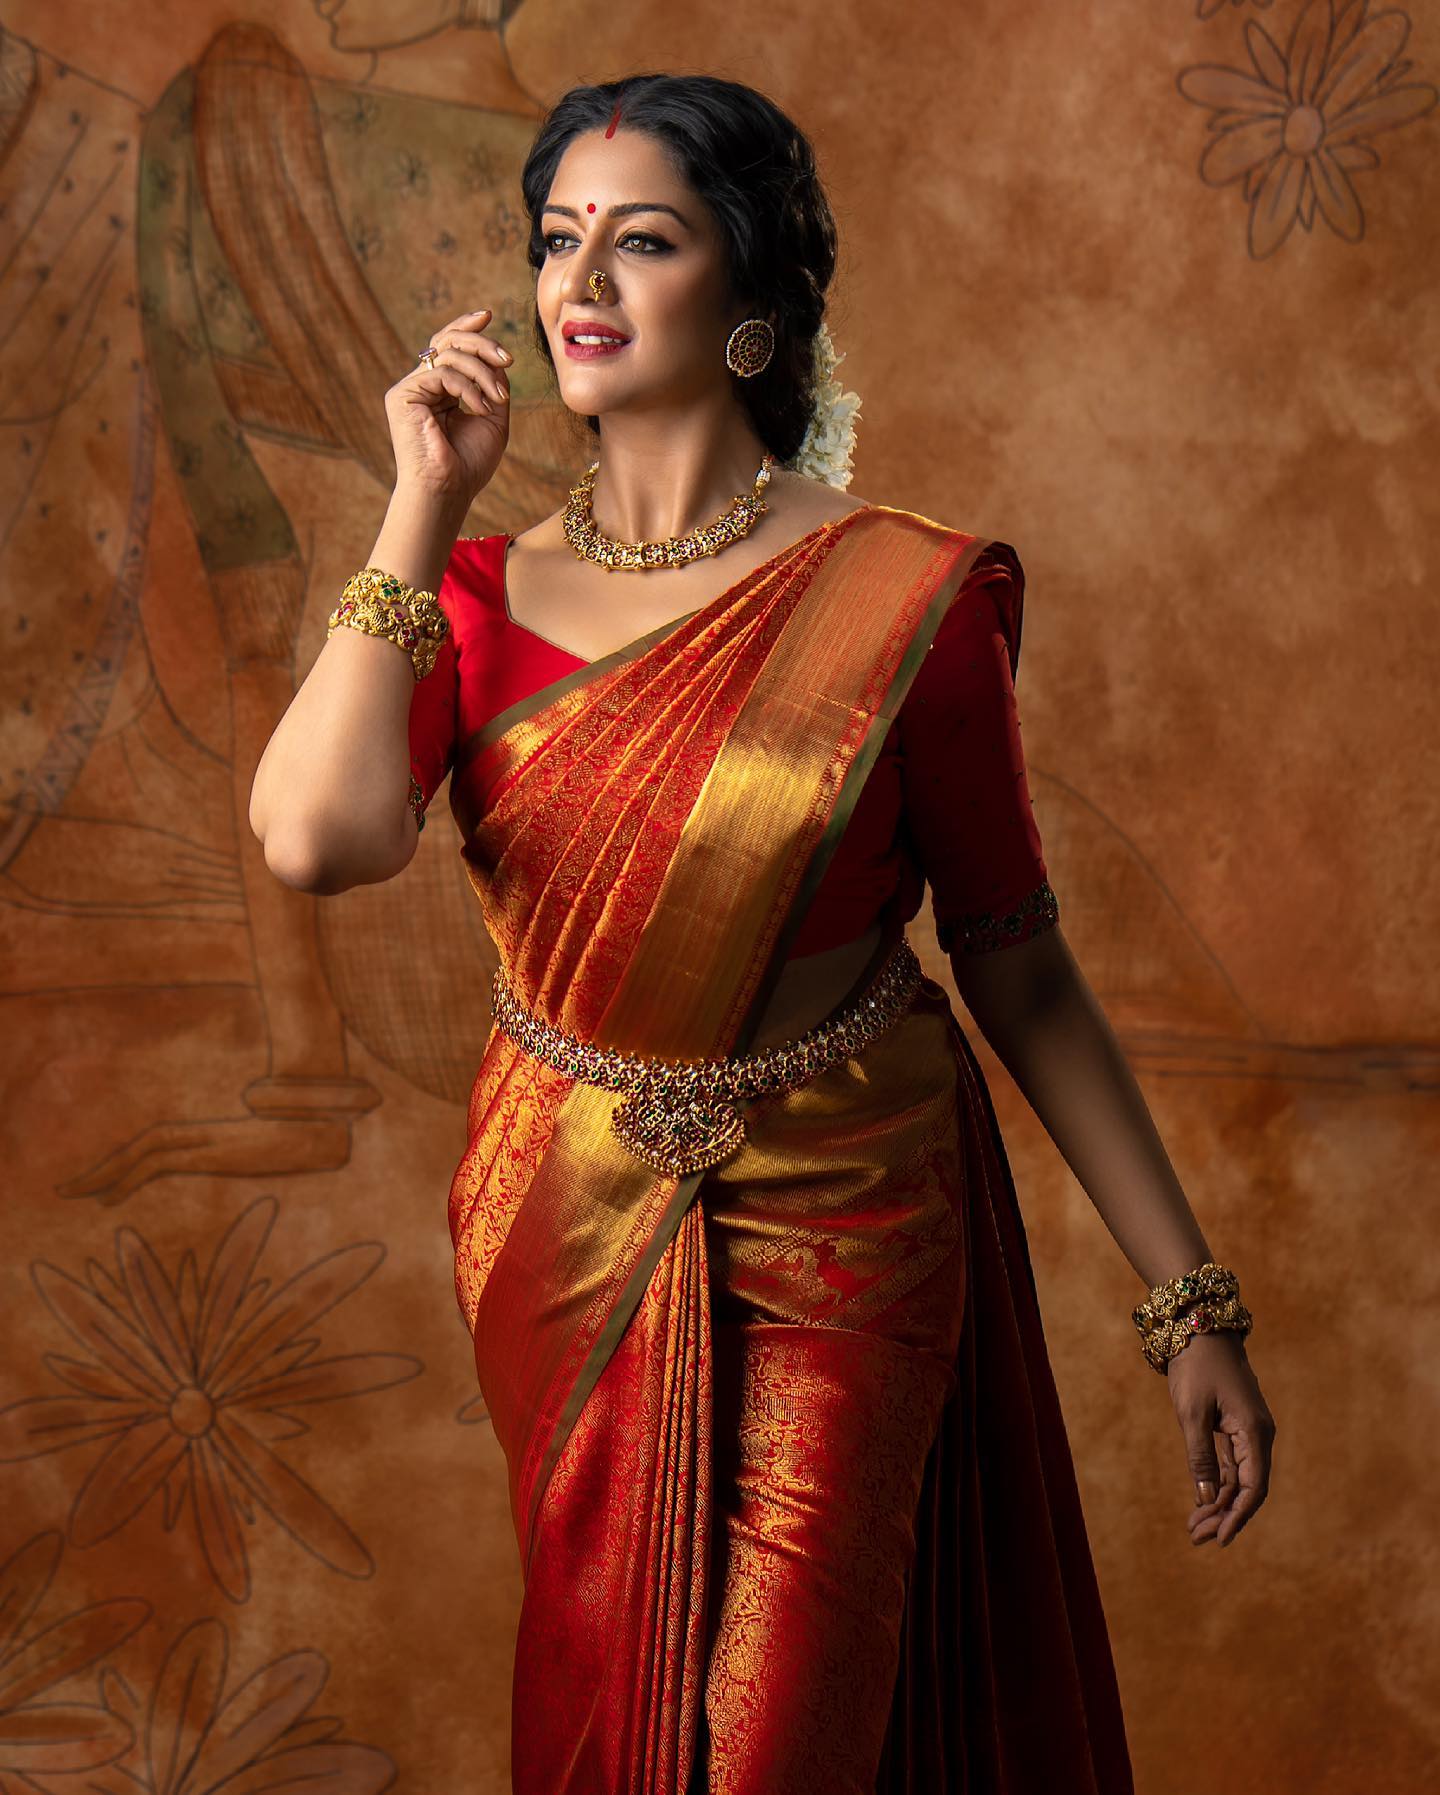 Ekayabanaras | Saree photoshoot, Indian photoshoot, Indian fashion